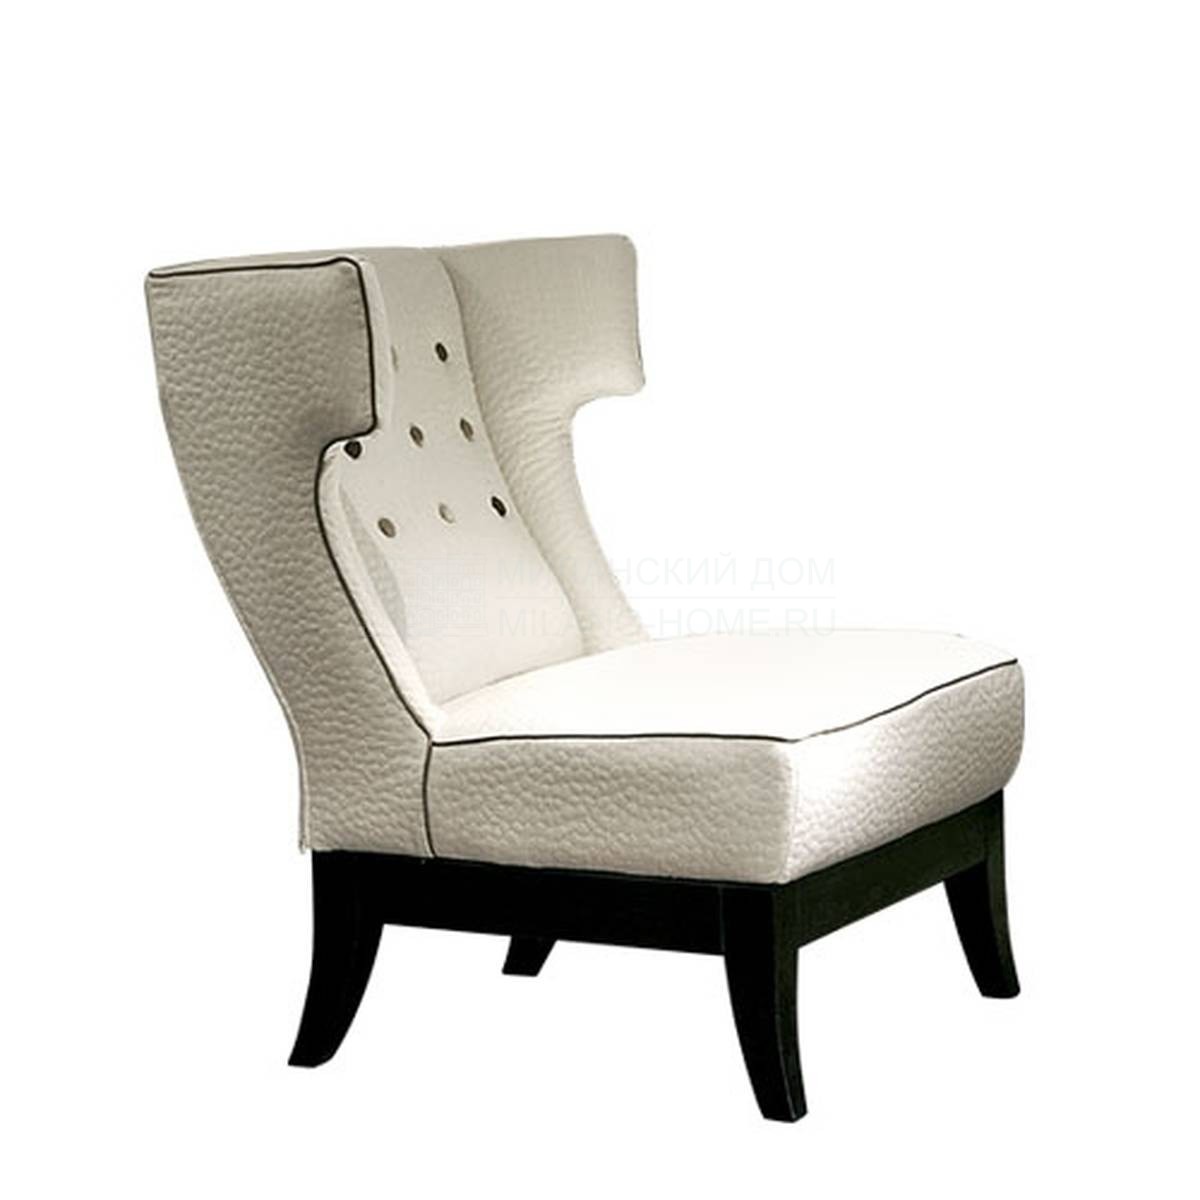 Кресло Isotta/ armchair из Италии фабрики SOFTHOUSE